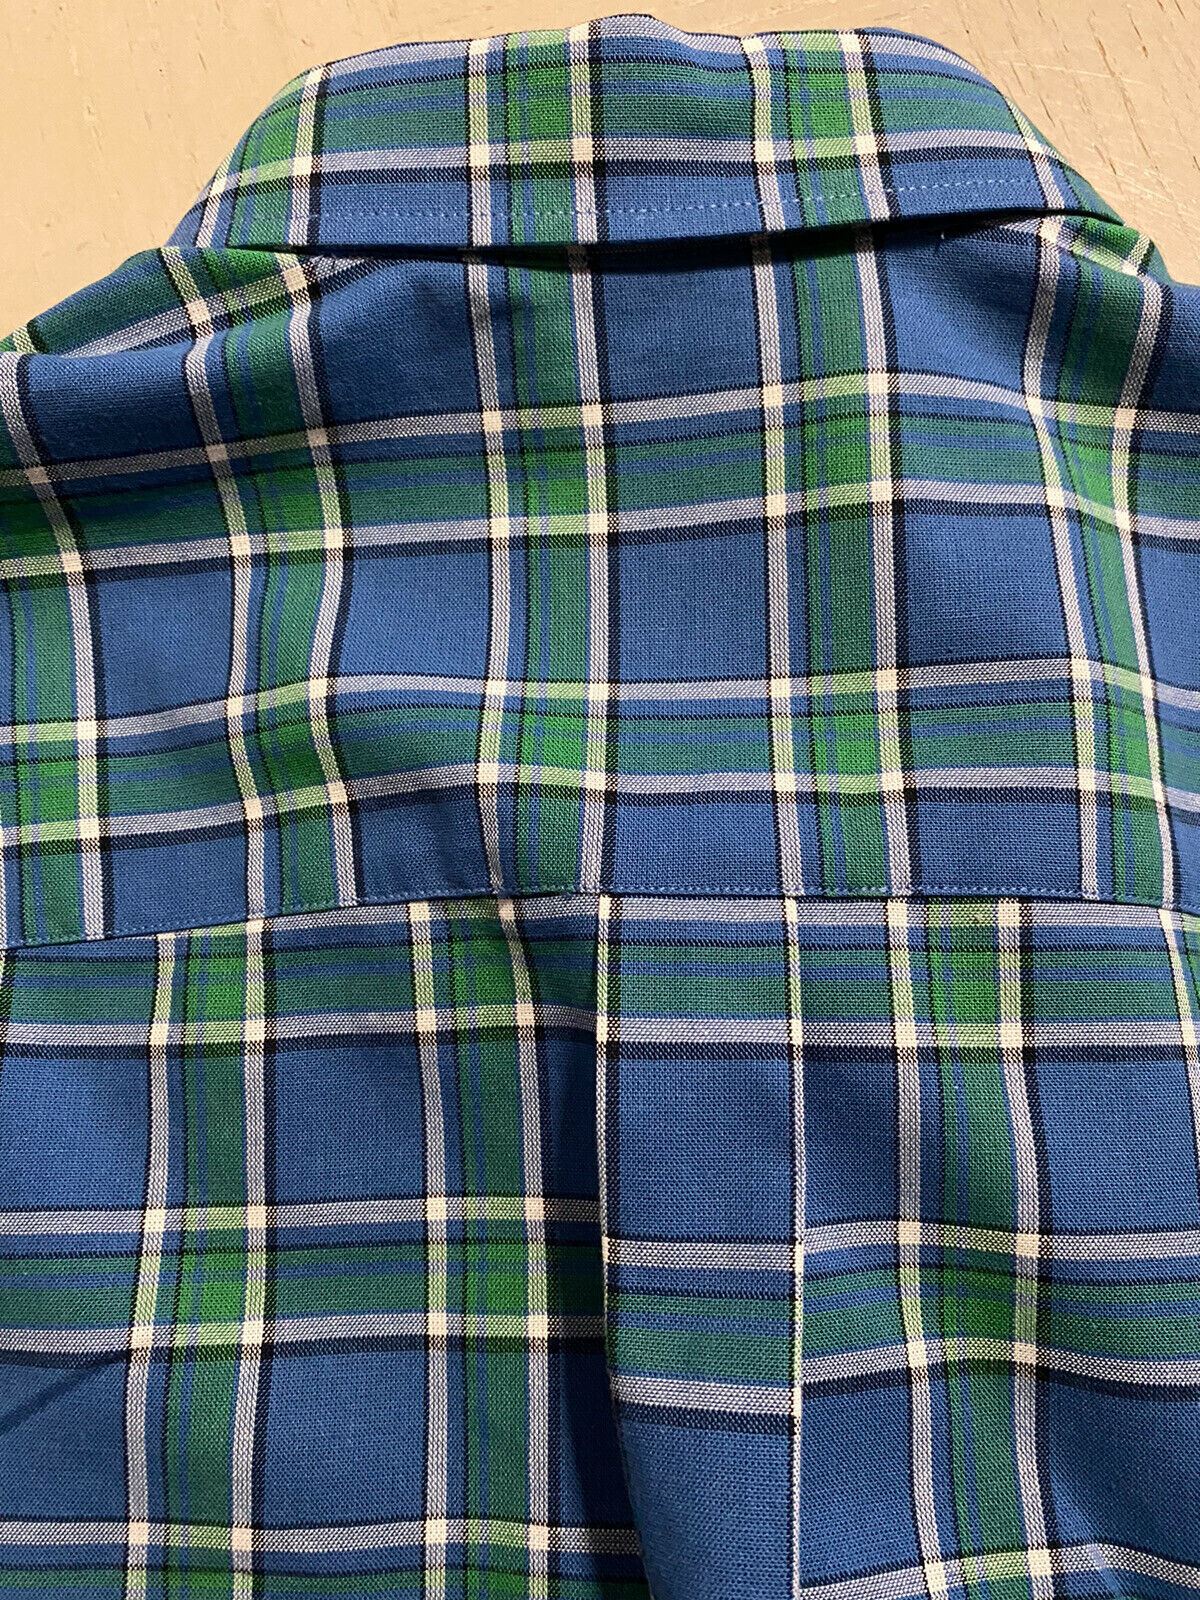 Neues Gucci-Herrenhemd mit kurzen Ärmeln, Blau, Größe L, Italien, für 750 $